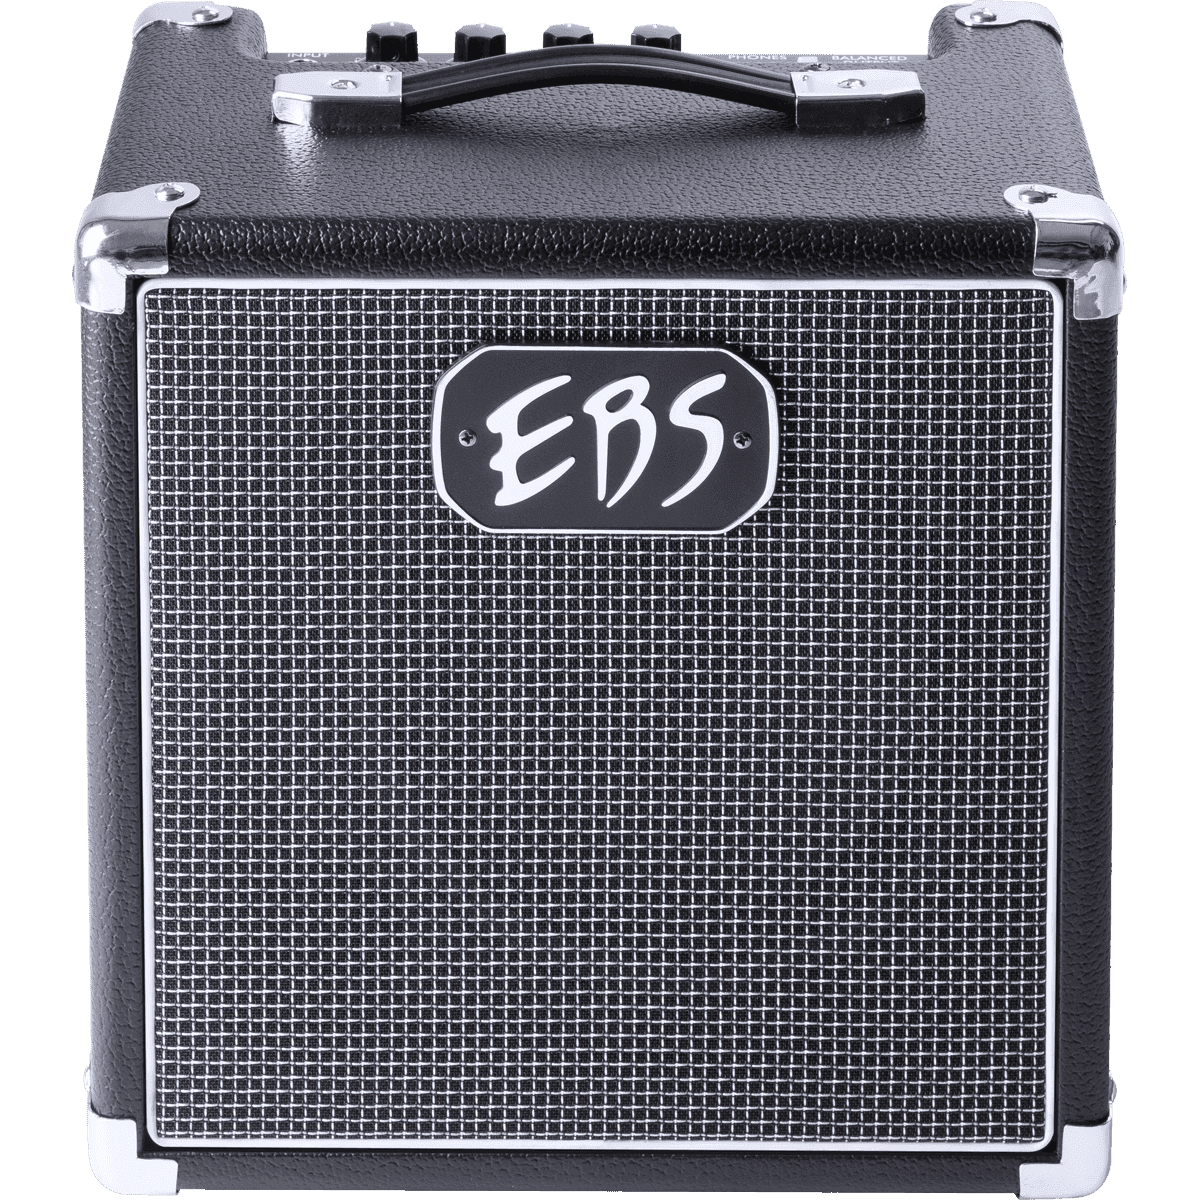 EBS Session 30 MK3 Bluetooth 1x8 Zoll Bassgitarren-Verstärker-Combo